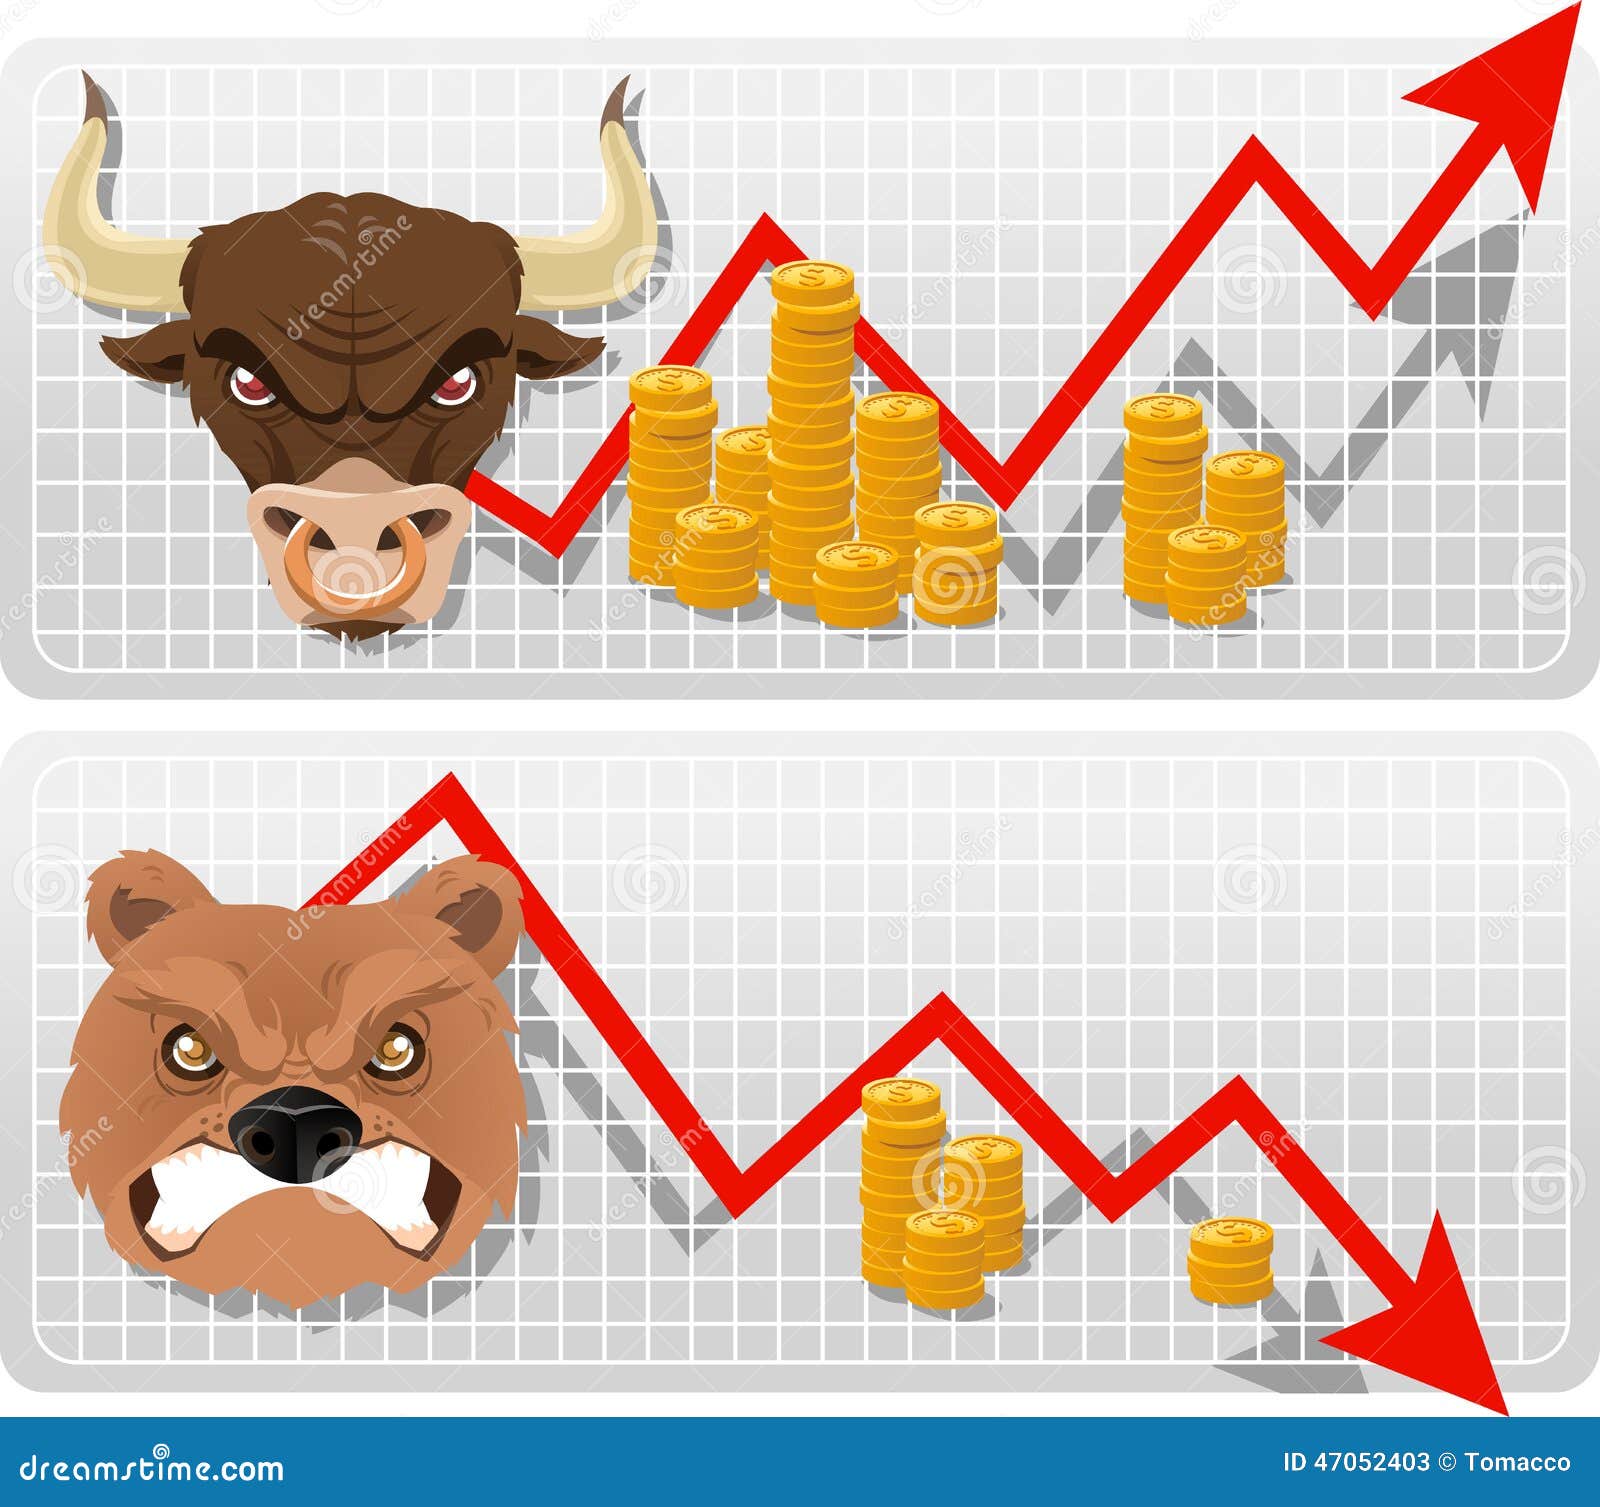 识别和预测中国股市的牛熊市状态